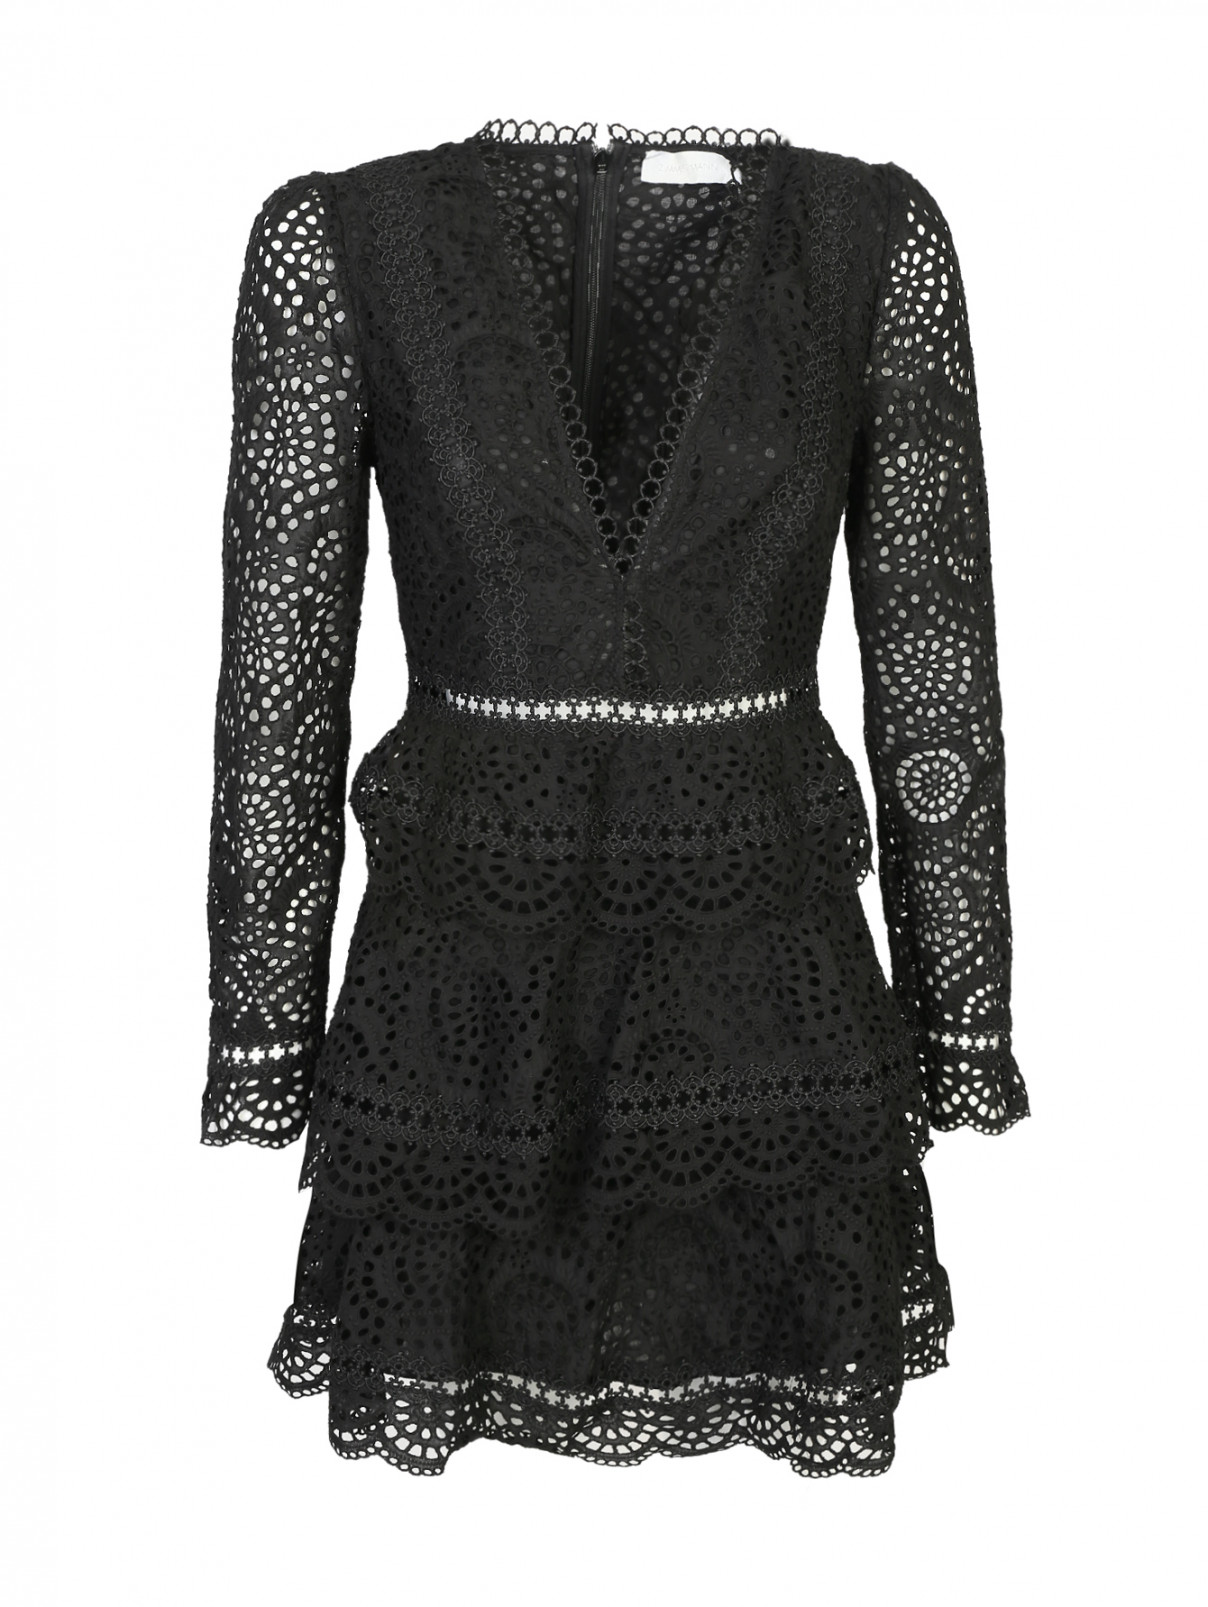 Платье кружевное, из хлопка Zimmermann  –  Общий вид  – Цвет:  Черный